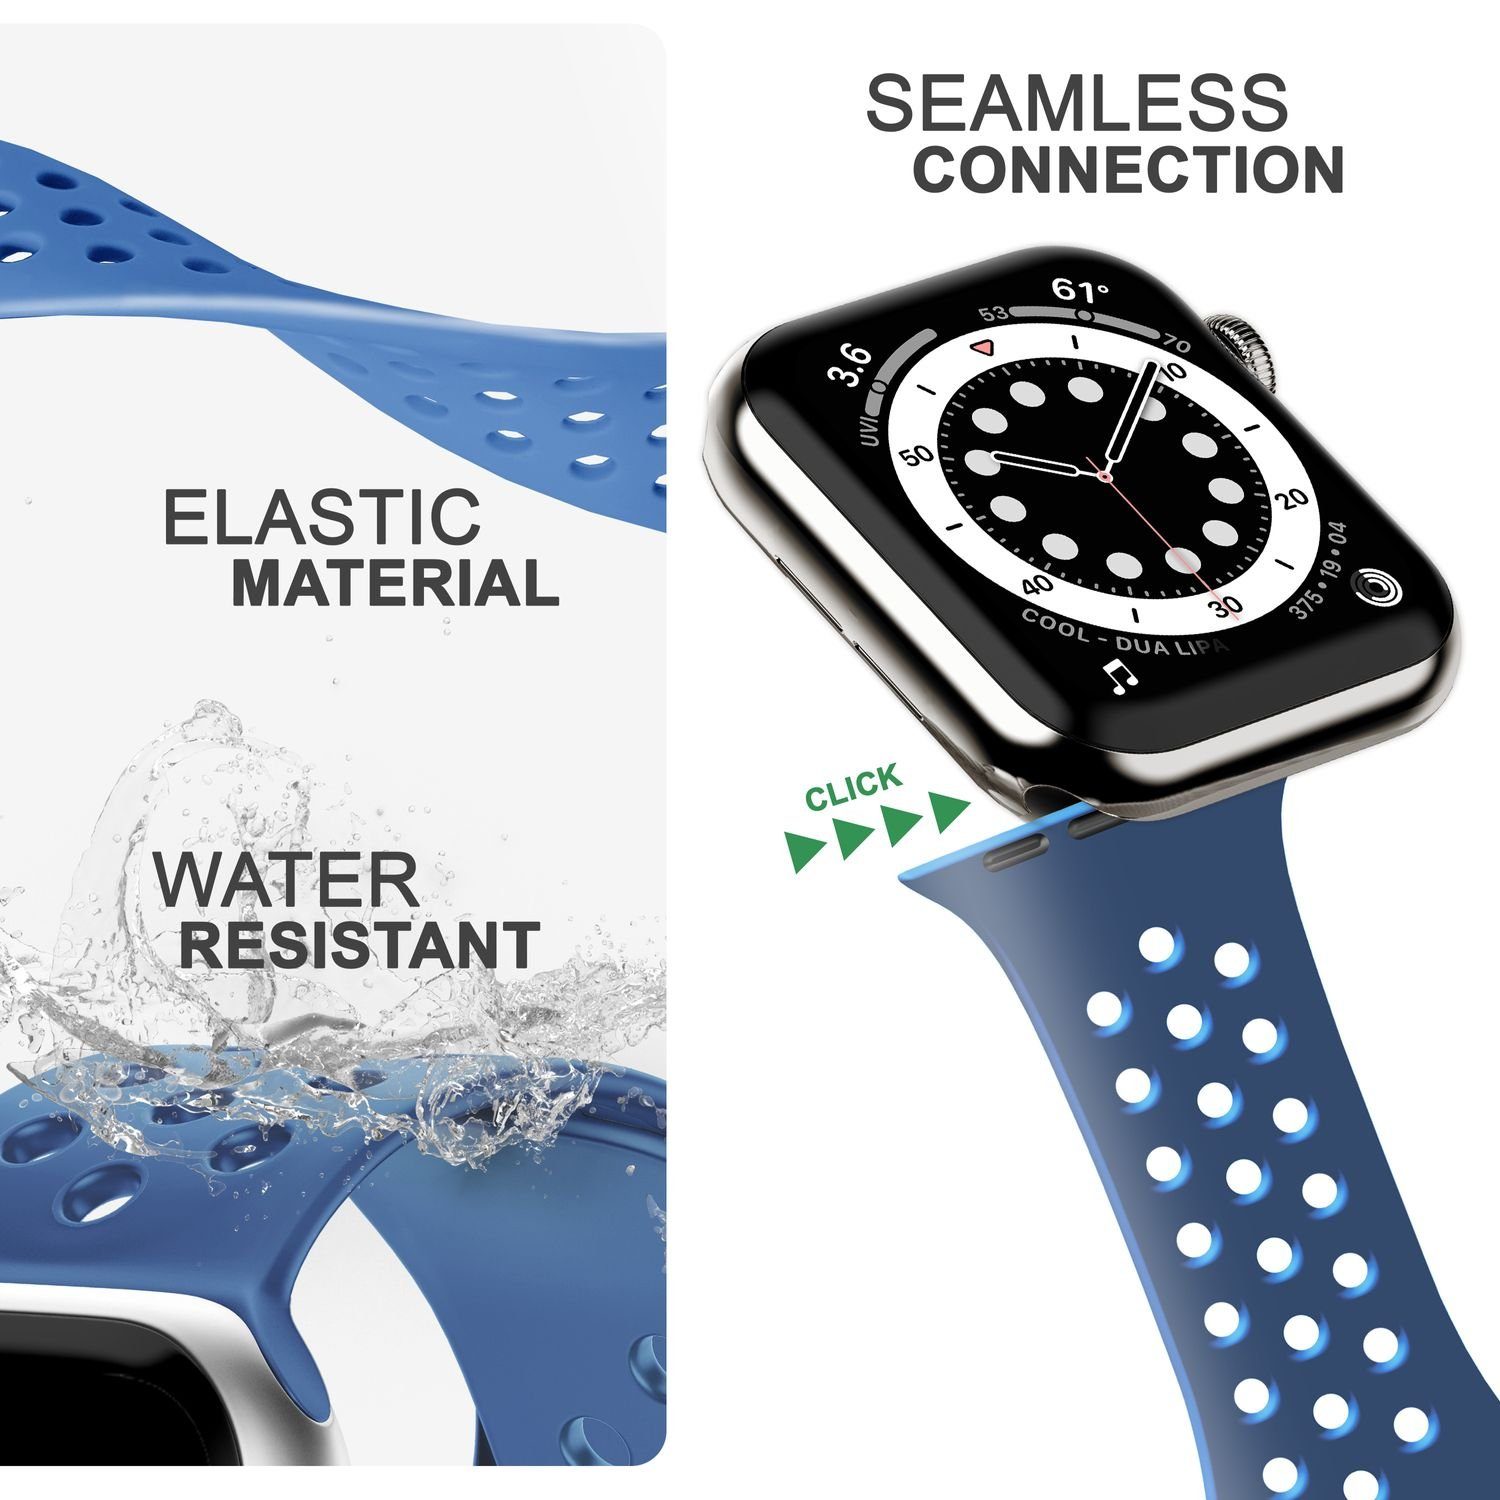 Silikon / Watch Ersatzband Apple für Atmungsaktiv Blau Nalia Gelochtes 38mm/40mm/41mm, / Uhr Smartwatch-Armband Fitness Sport